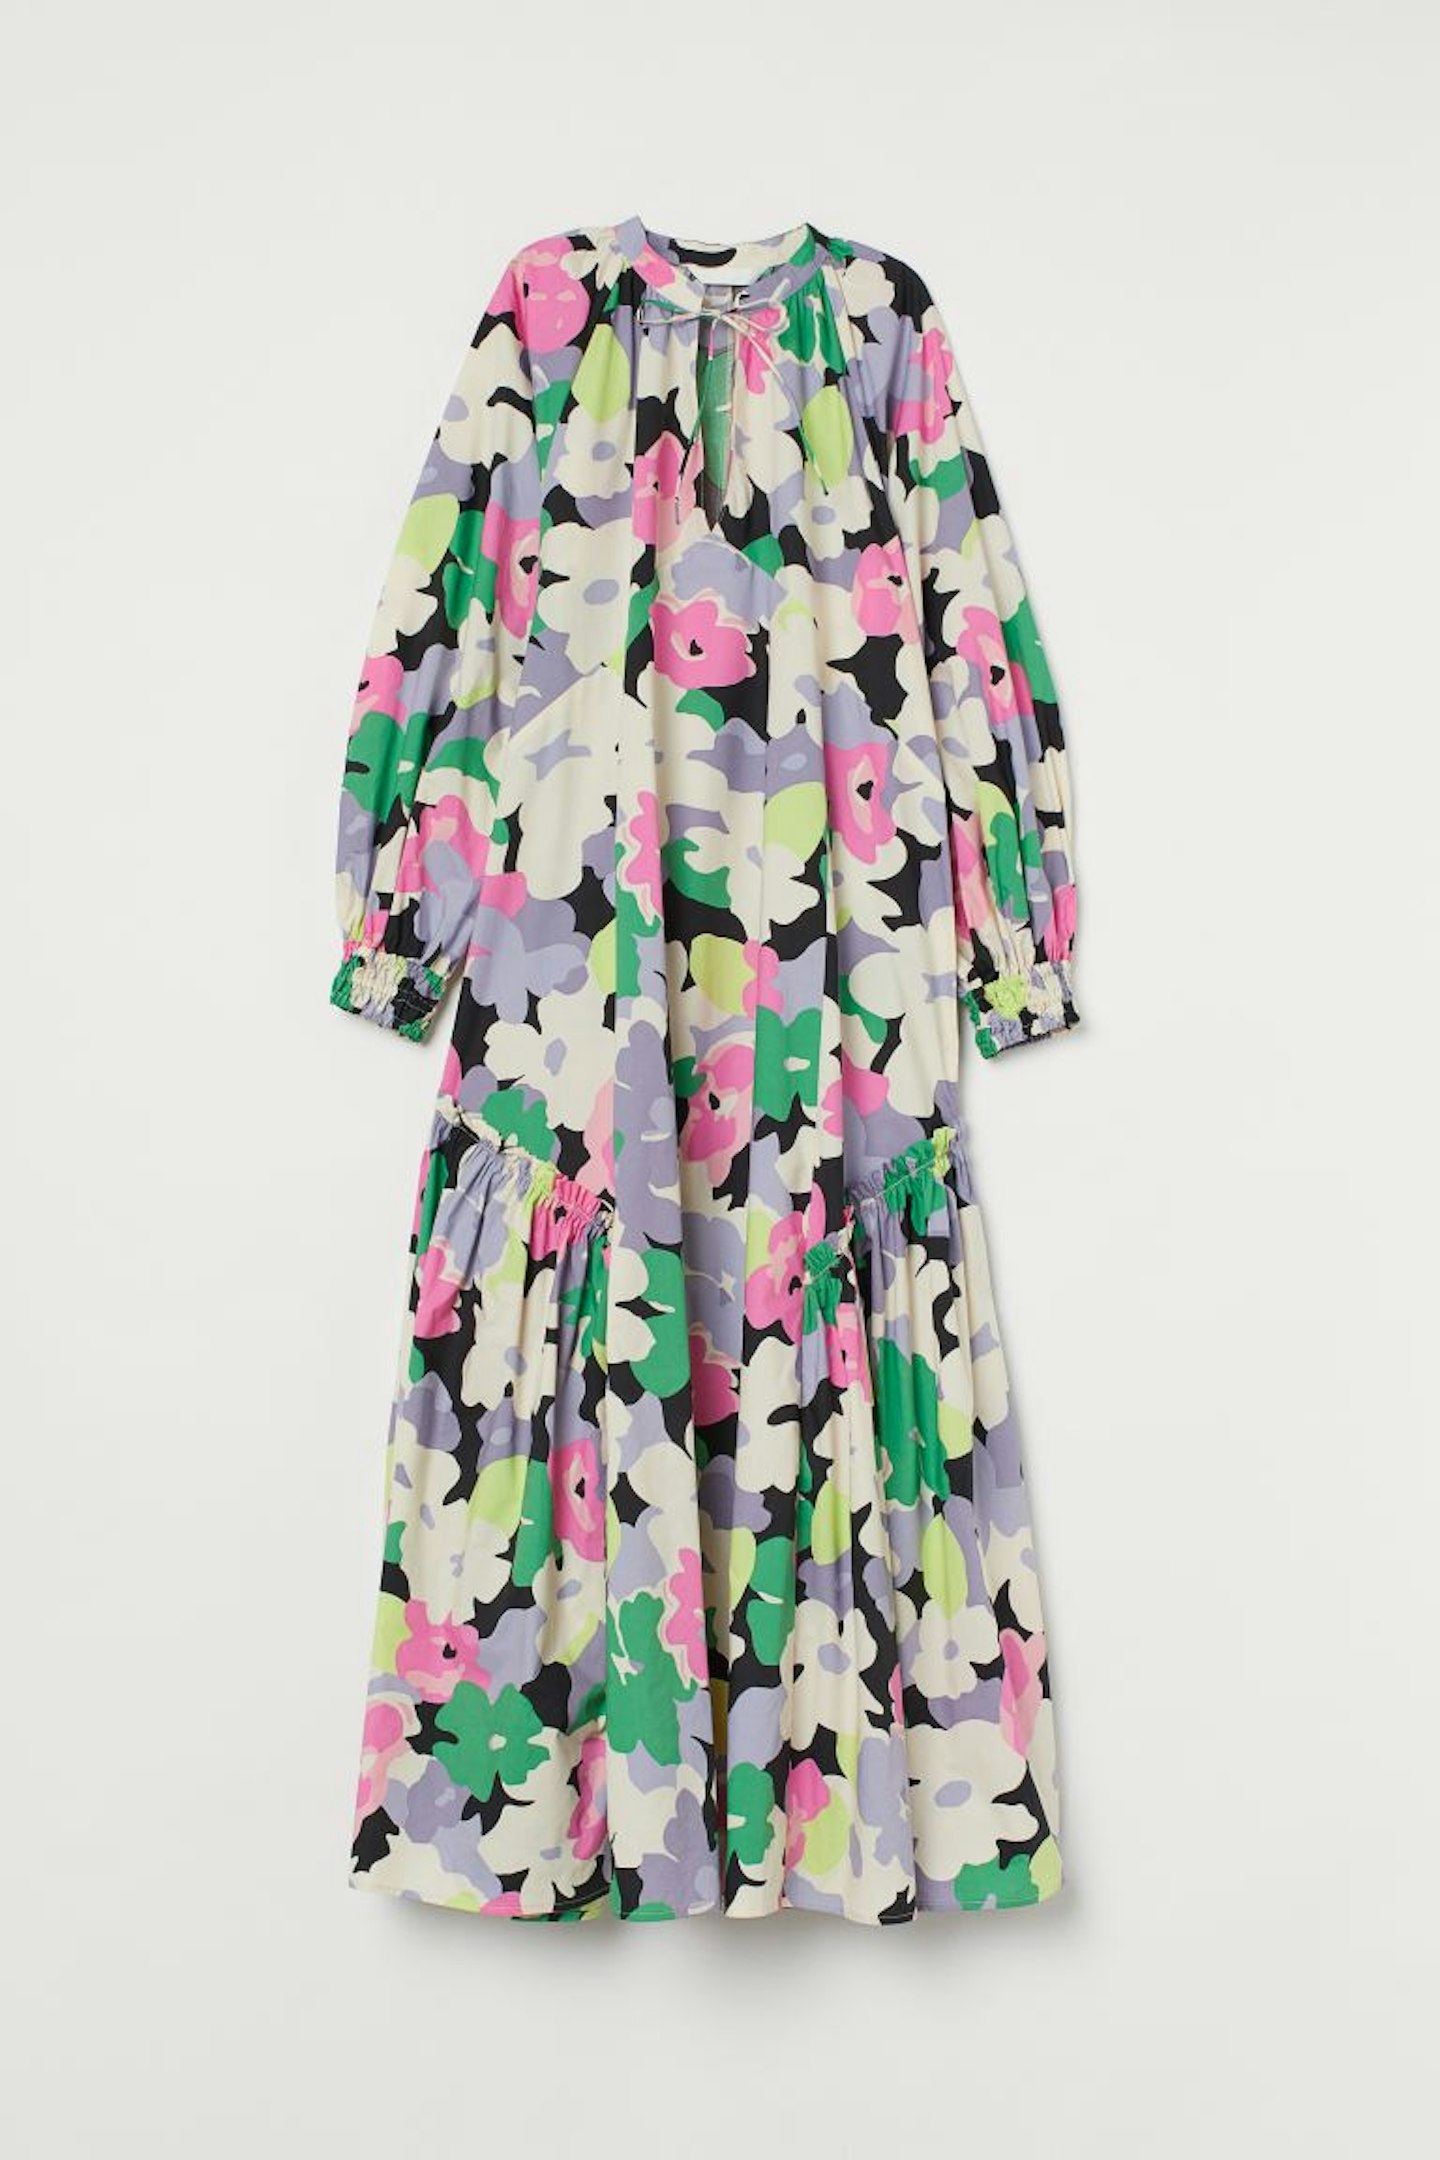 H&M, Kaftan Dress, £34.99